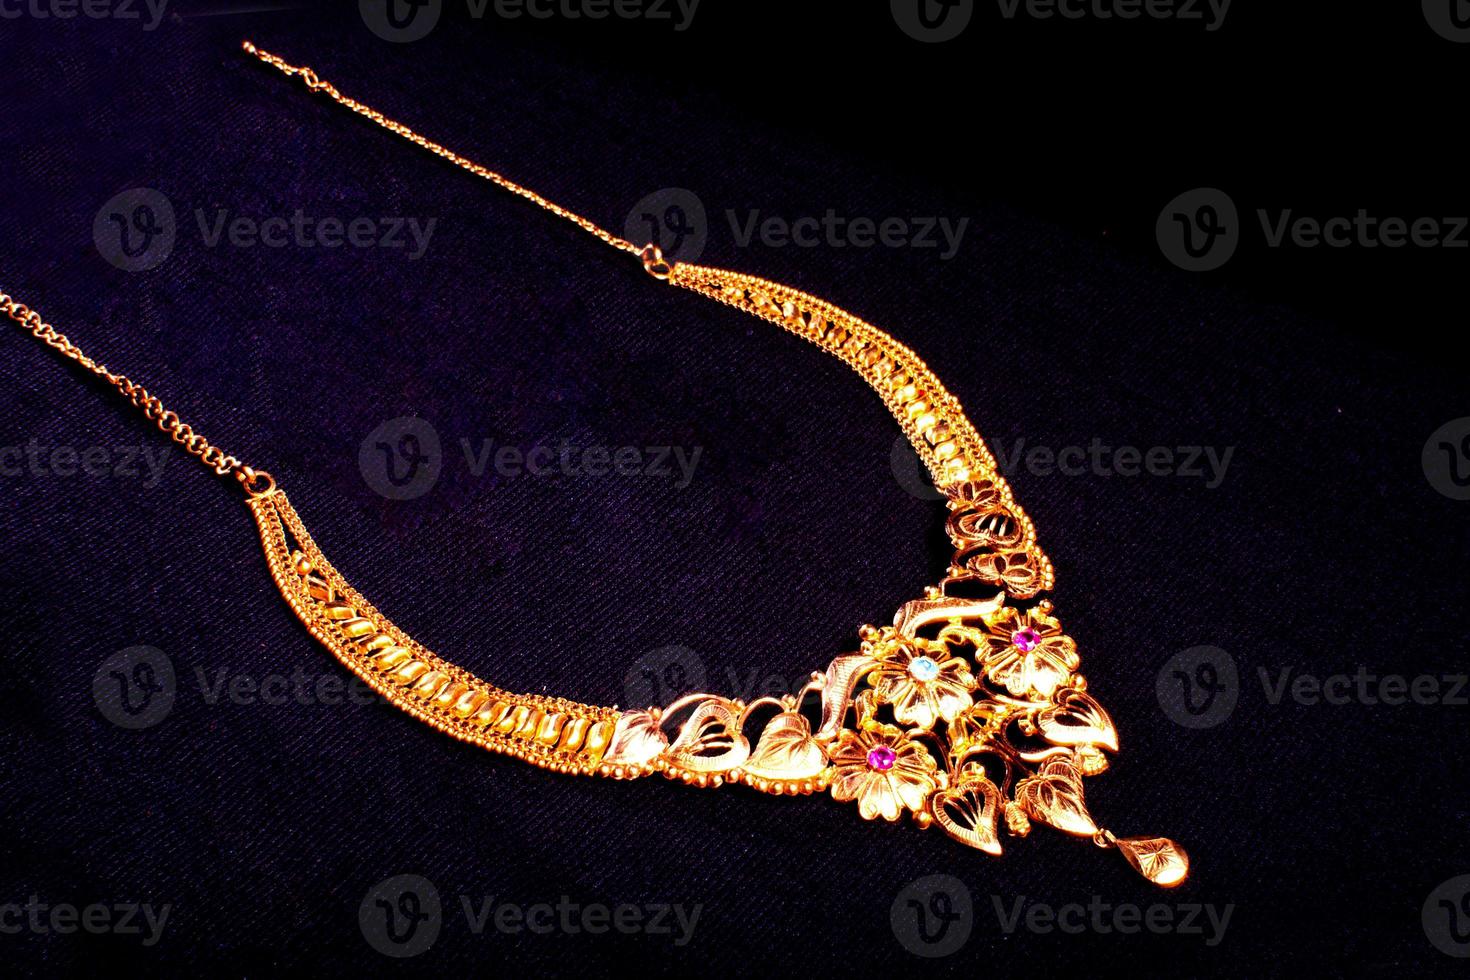 el collar de oro está salpicado de pequeñas piedras y otras borlas con diseños intrincados foto